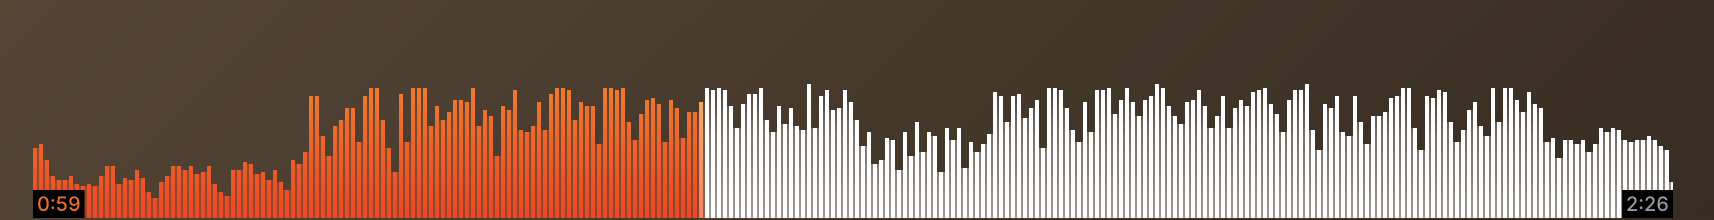 Soundcloud waveform progress